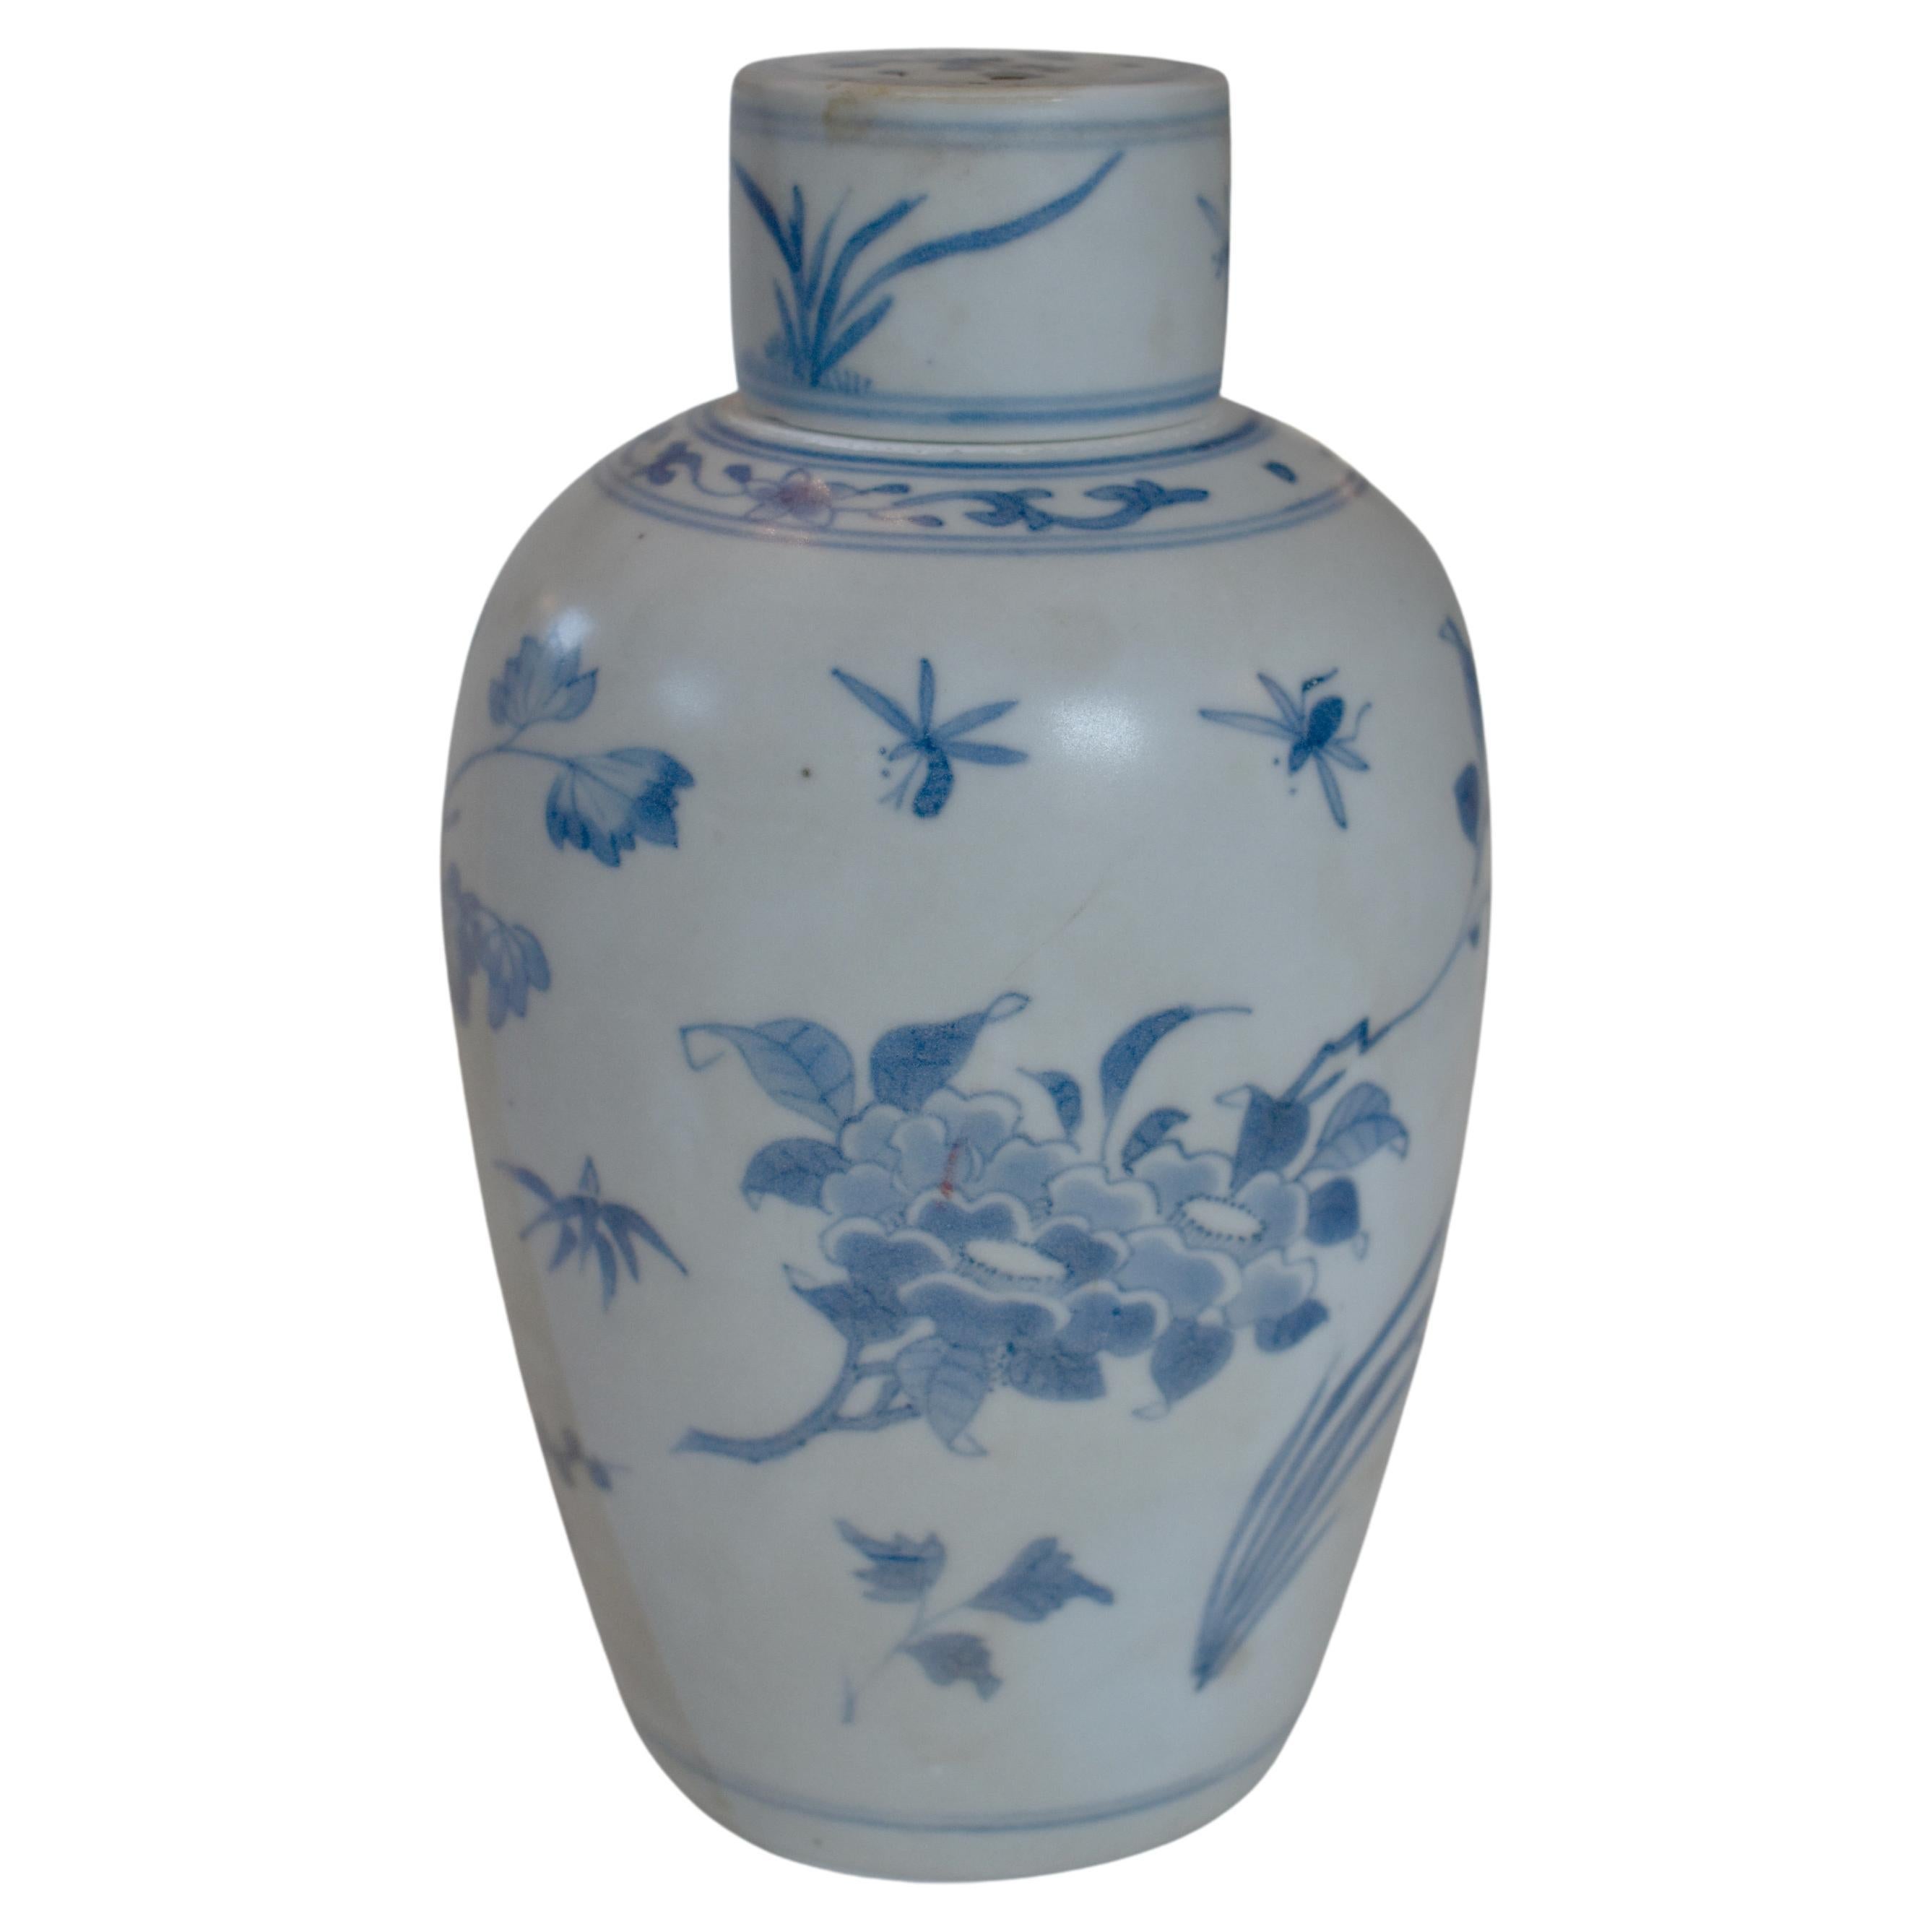 Vase ovoïde en porcelaine de Chine bleu et blanc de la période de transition avec couvercle de la Collection Hatcher. 

Ce vase faisait partie d'un magot récupéré par le capitaine Michael Hatcher dans l'épave d'un navire qui a sombré dans la mer de